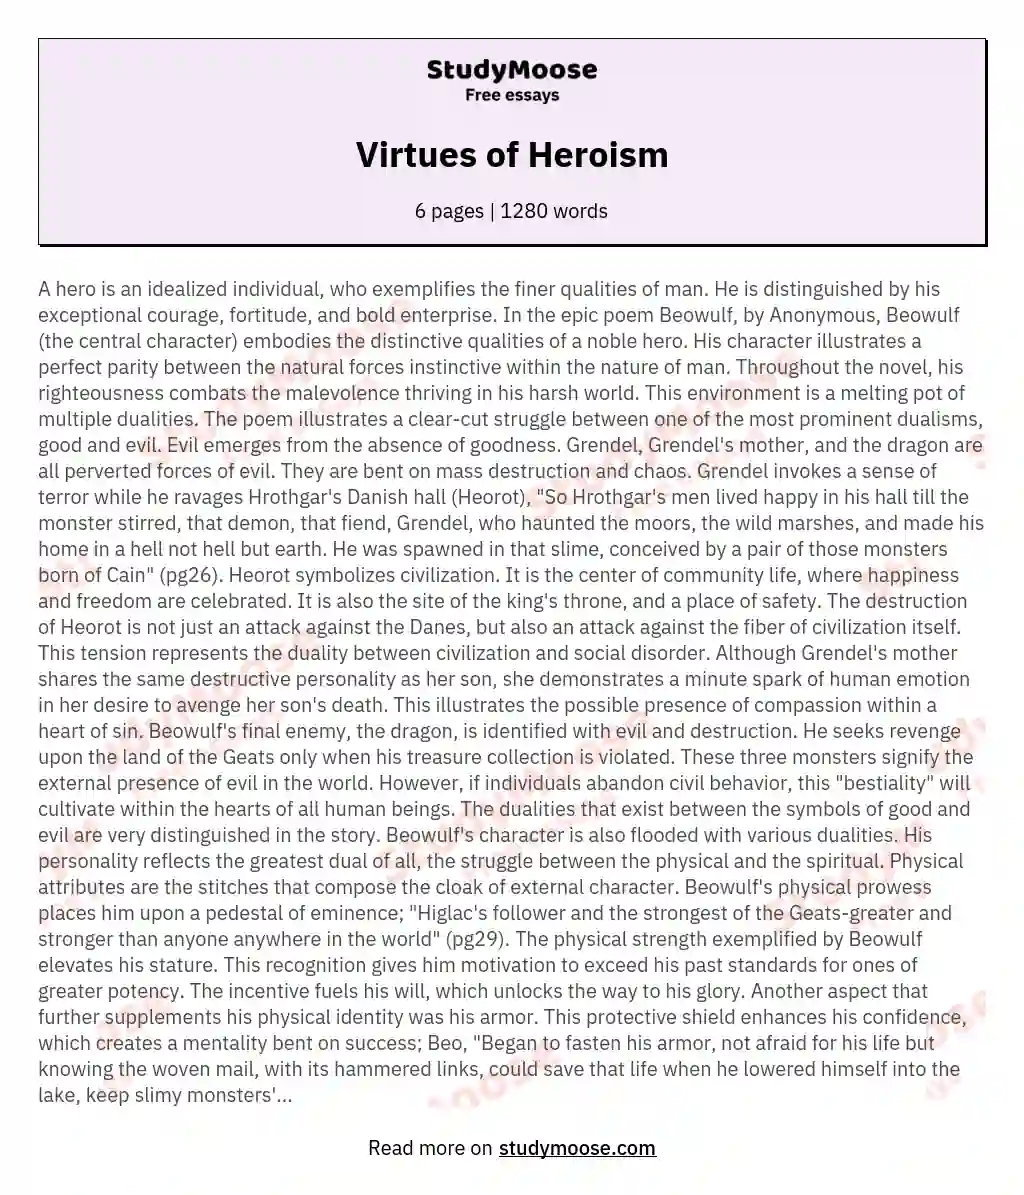 Virtues of Heroism essay